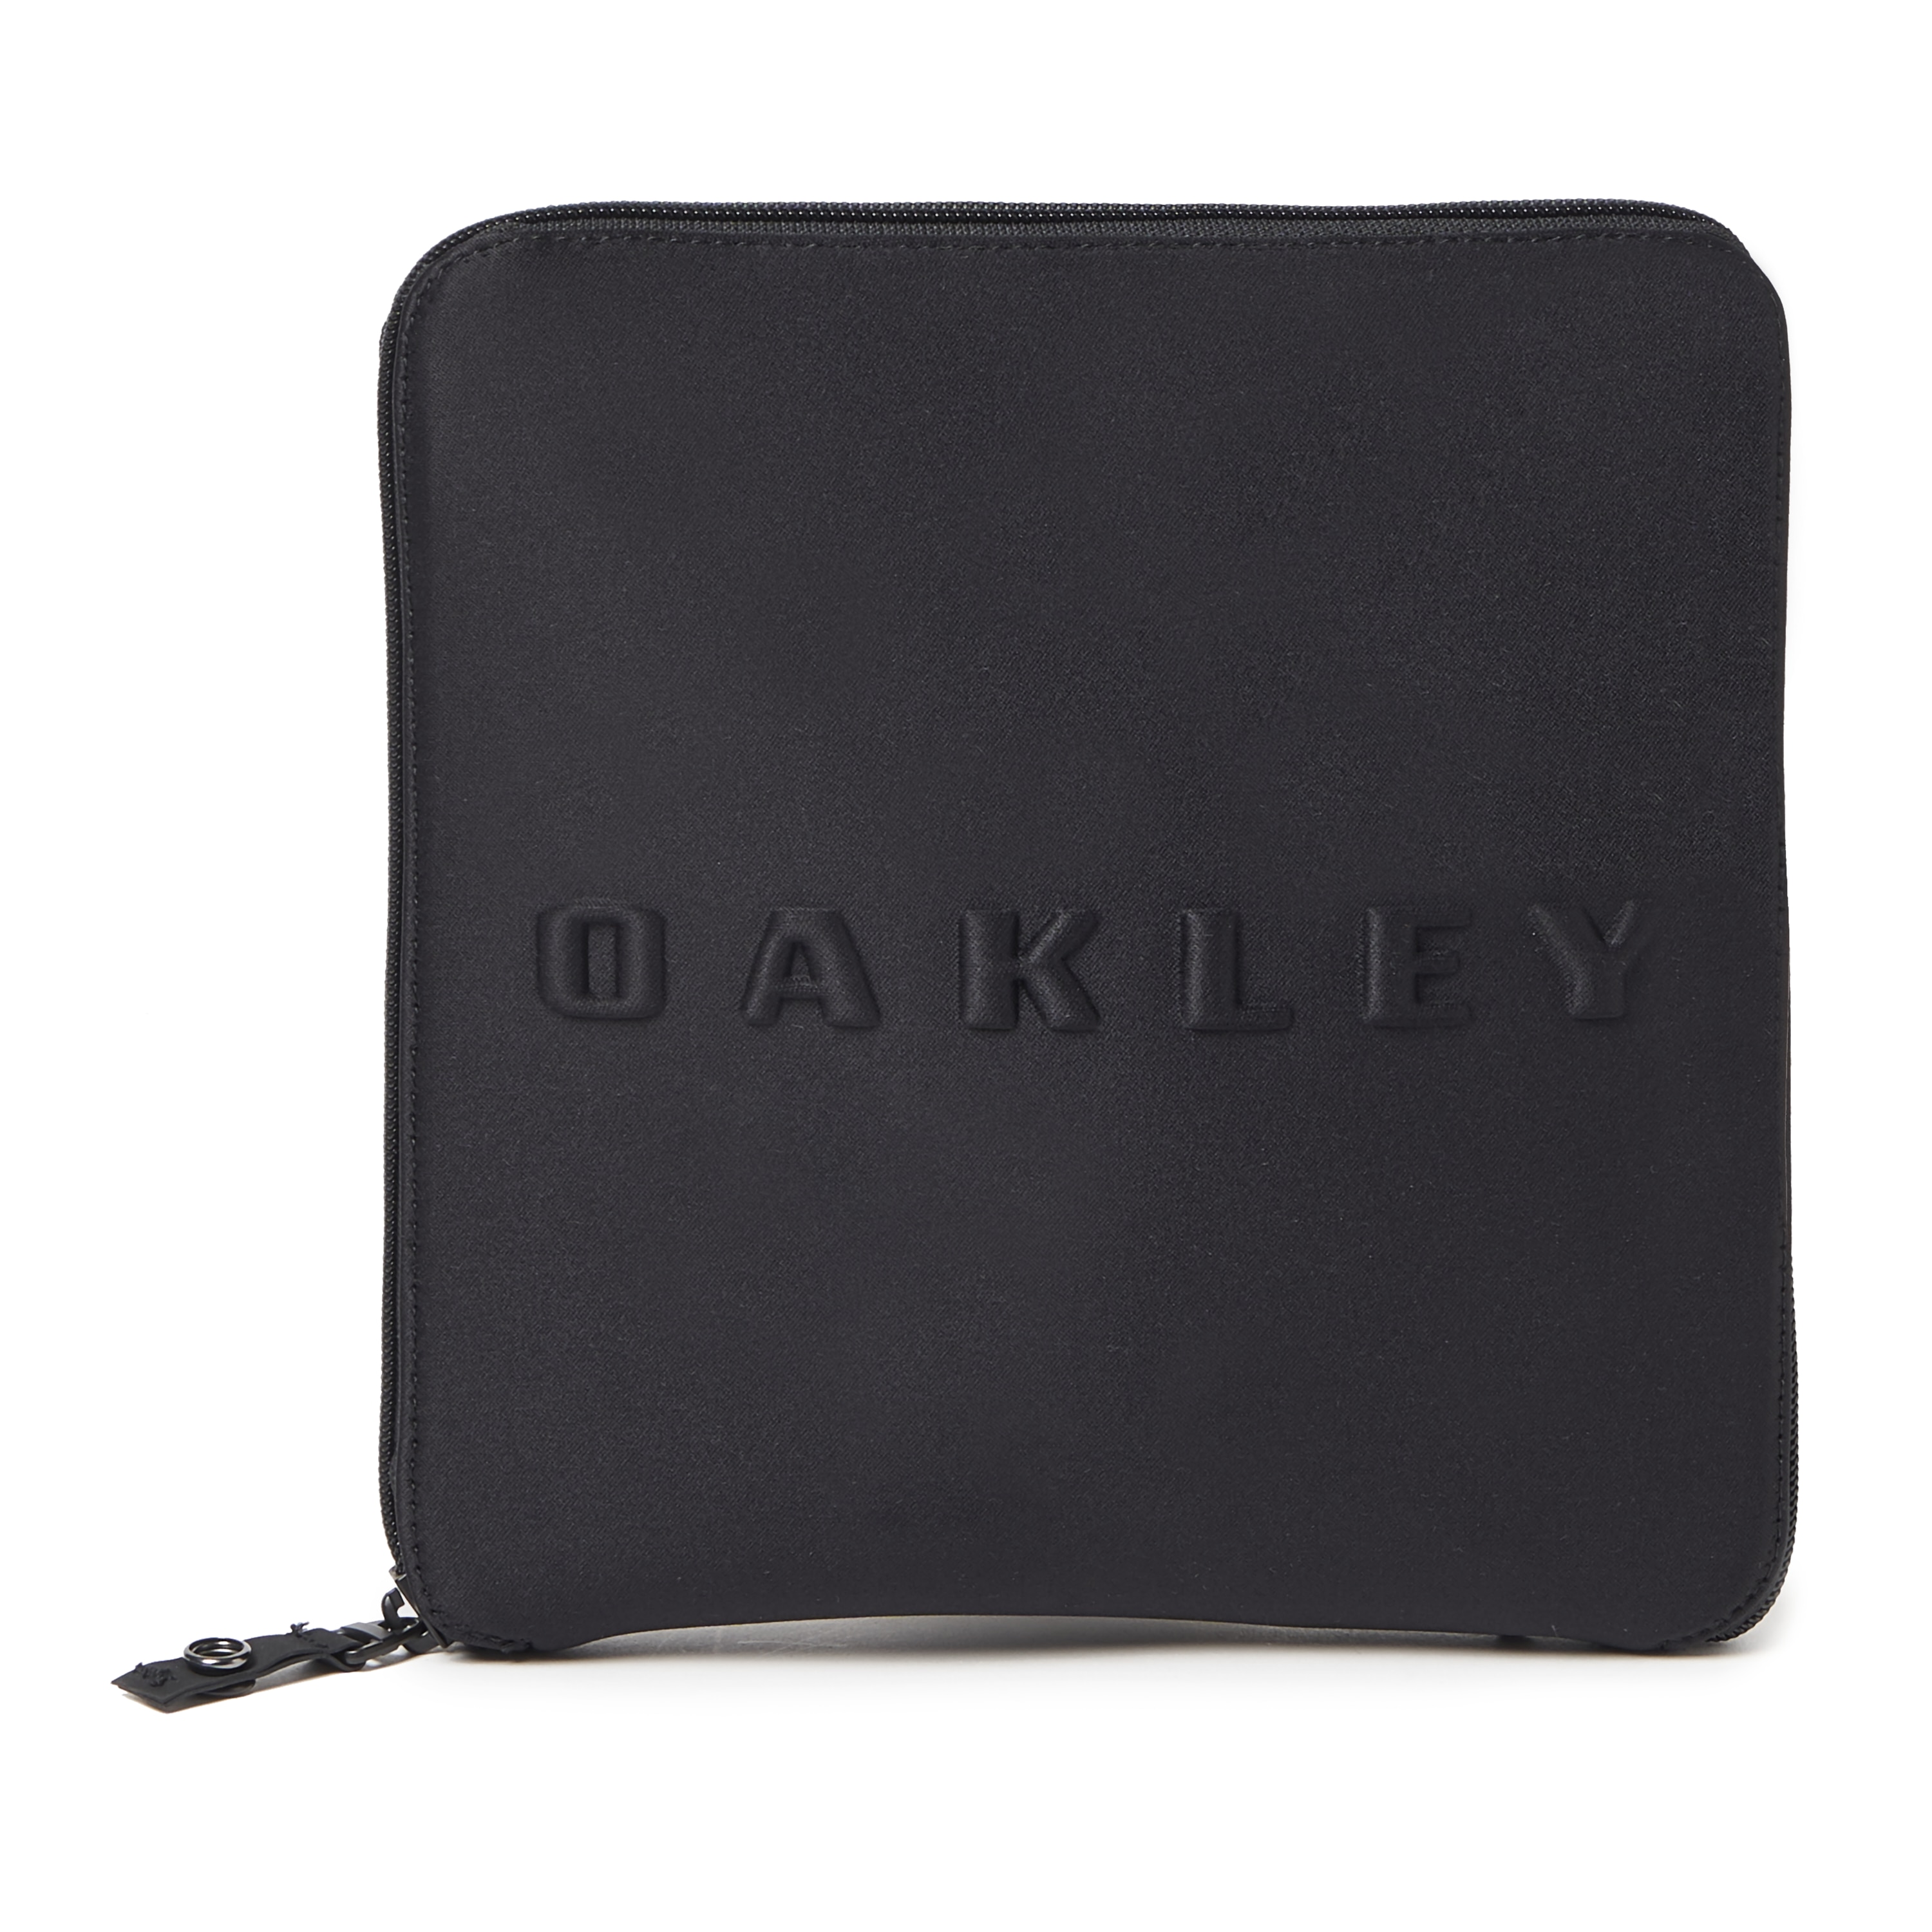 Oakley Packable Duffle - Blackout 